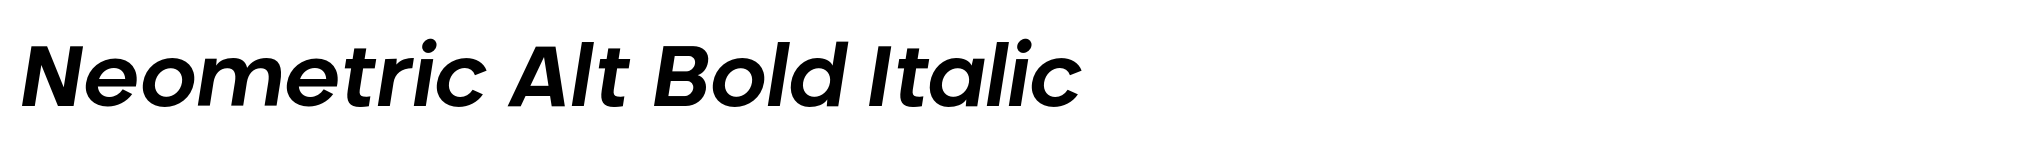 Neometric Alt Bold Italic image